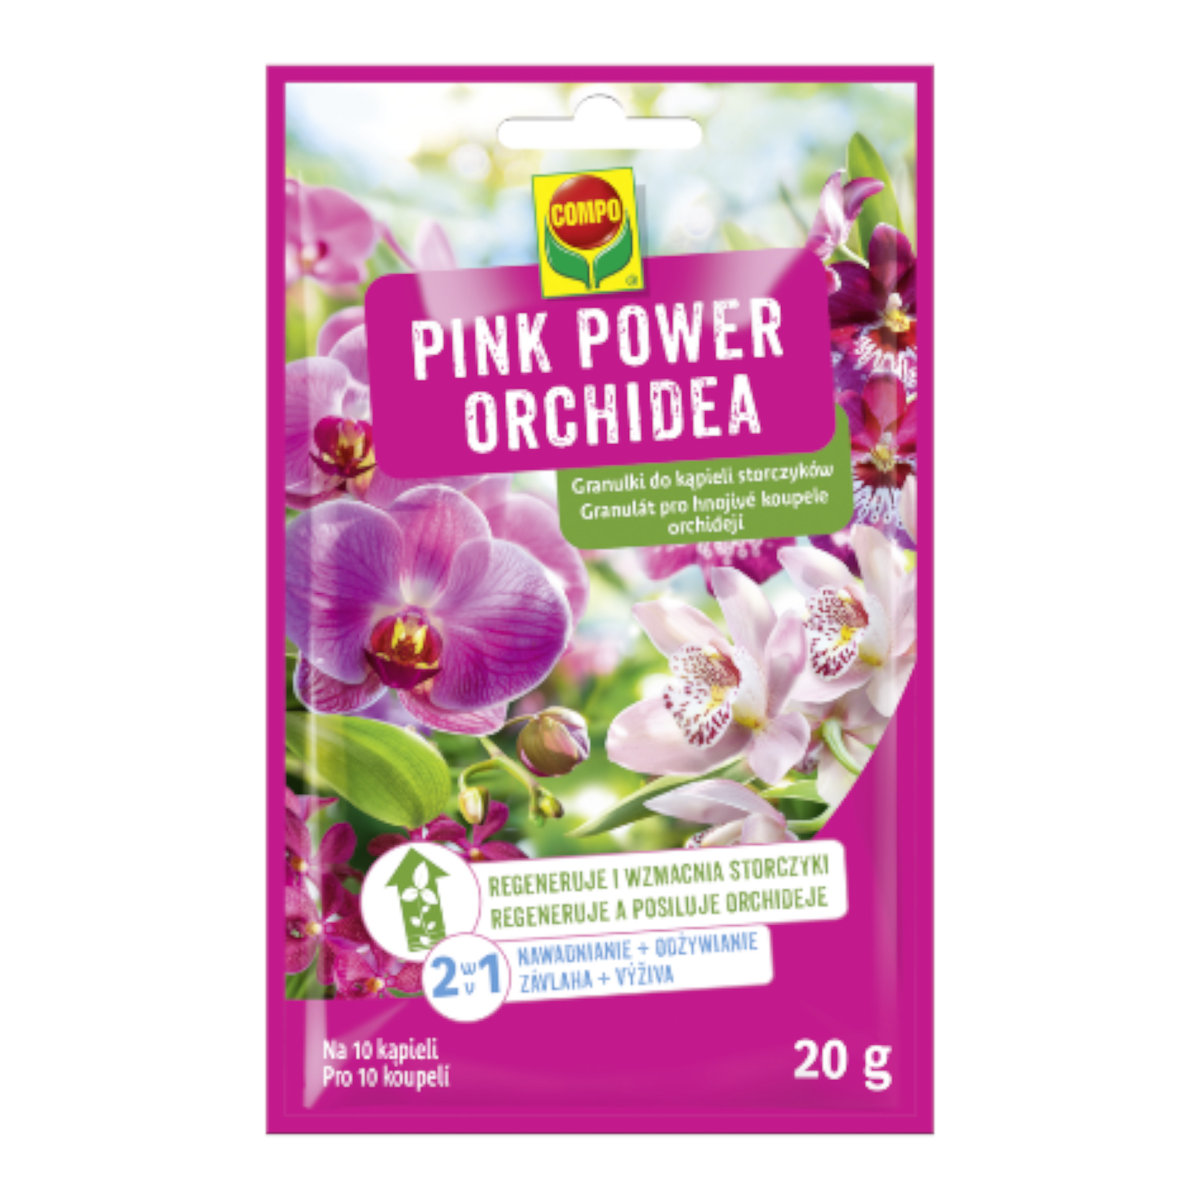 Zdjęcia - Pozostałe narzędzia ogrodnicze Granulki do kąpieli storczyków Pink Power Orchidea 20 g COMPO